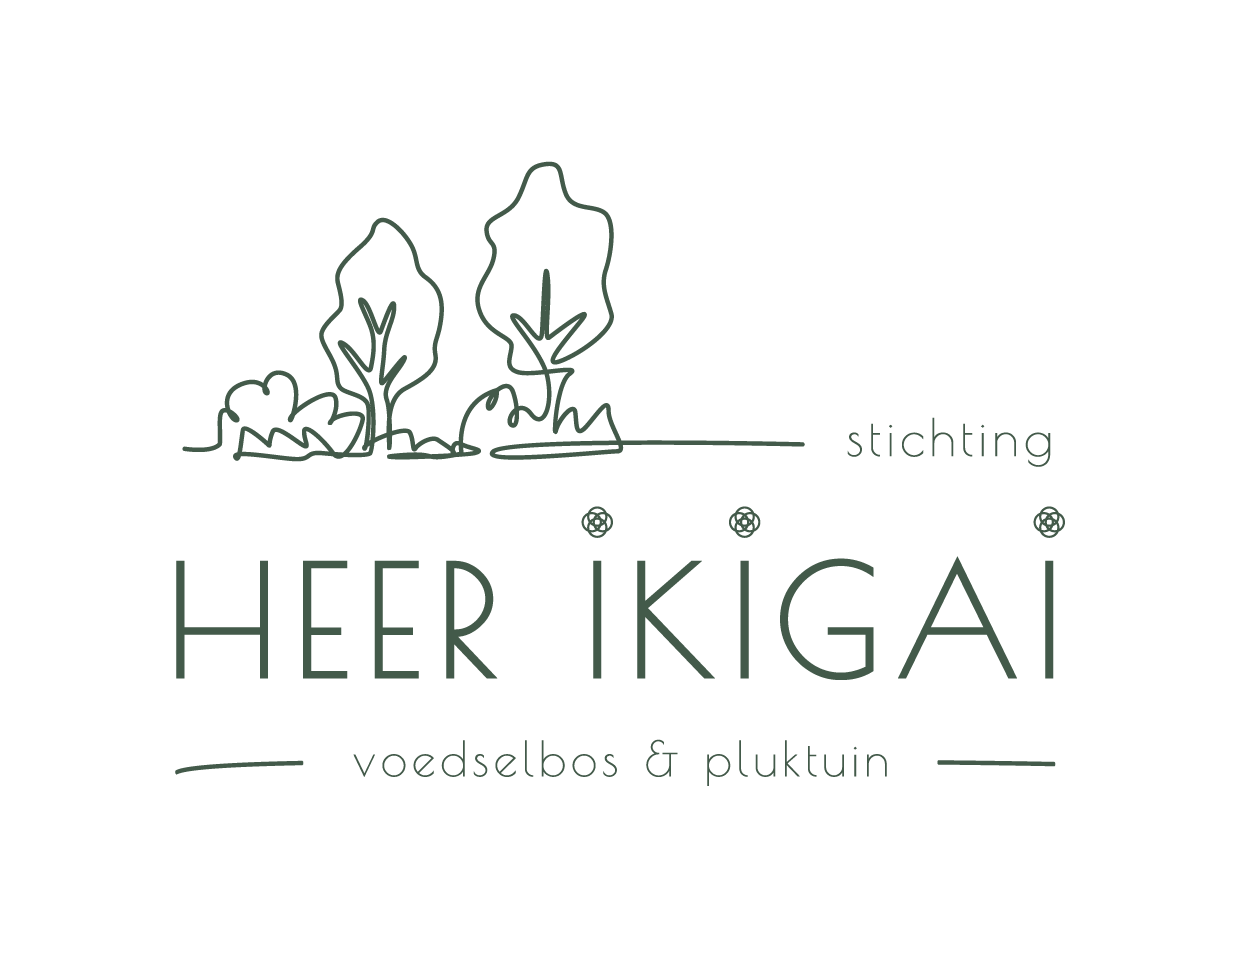 Logo-Heer-Ikigai_voedselbos-pluktuin